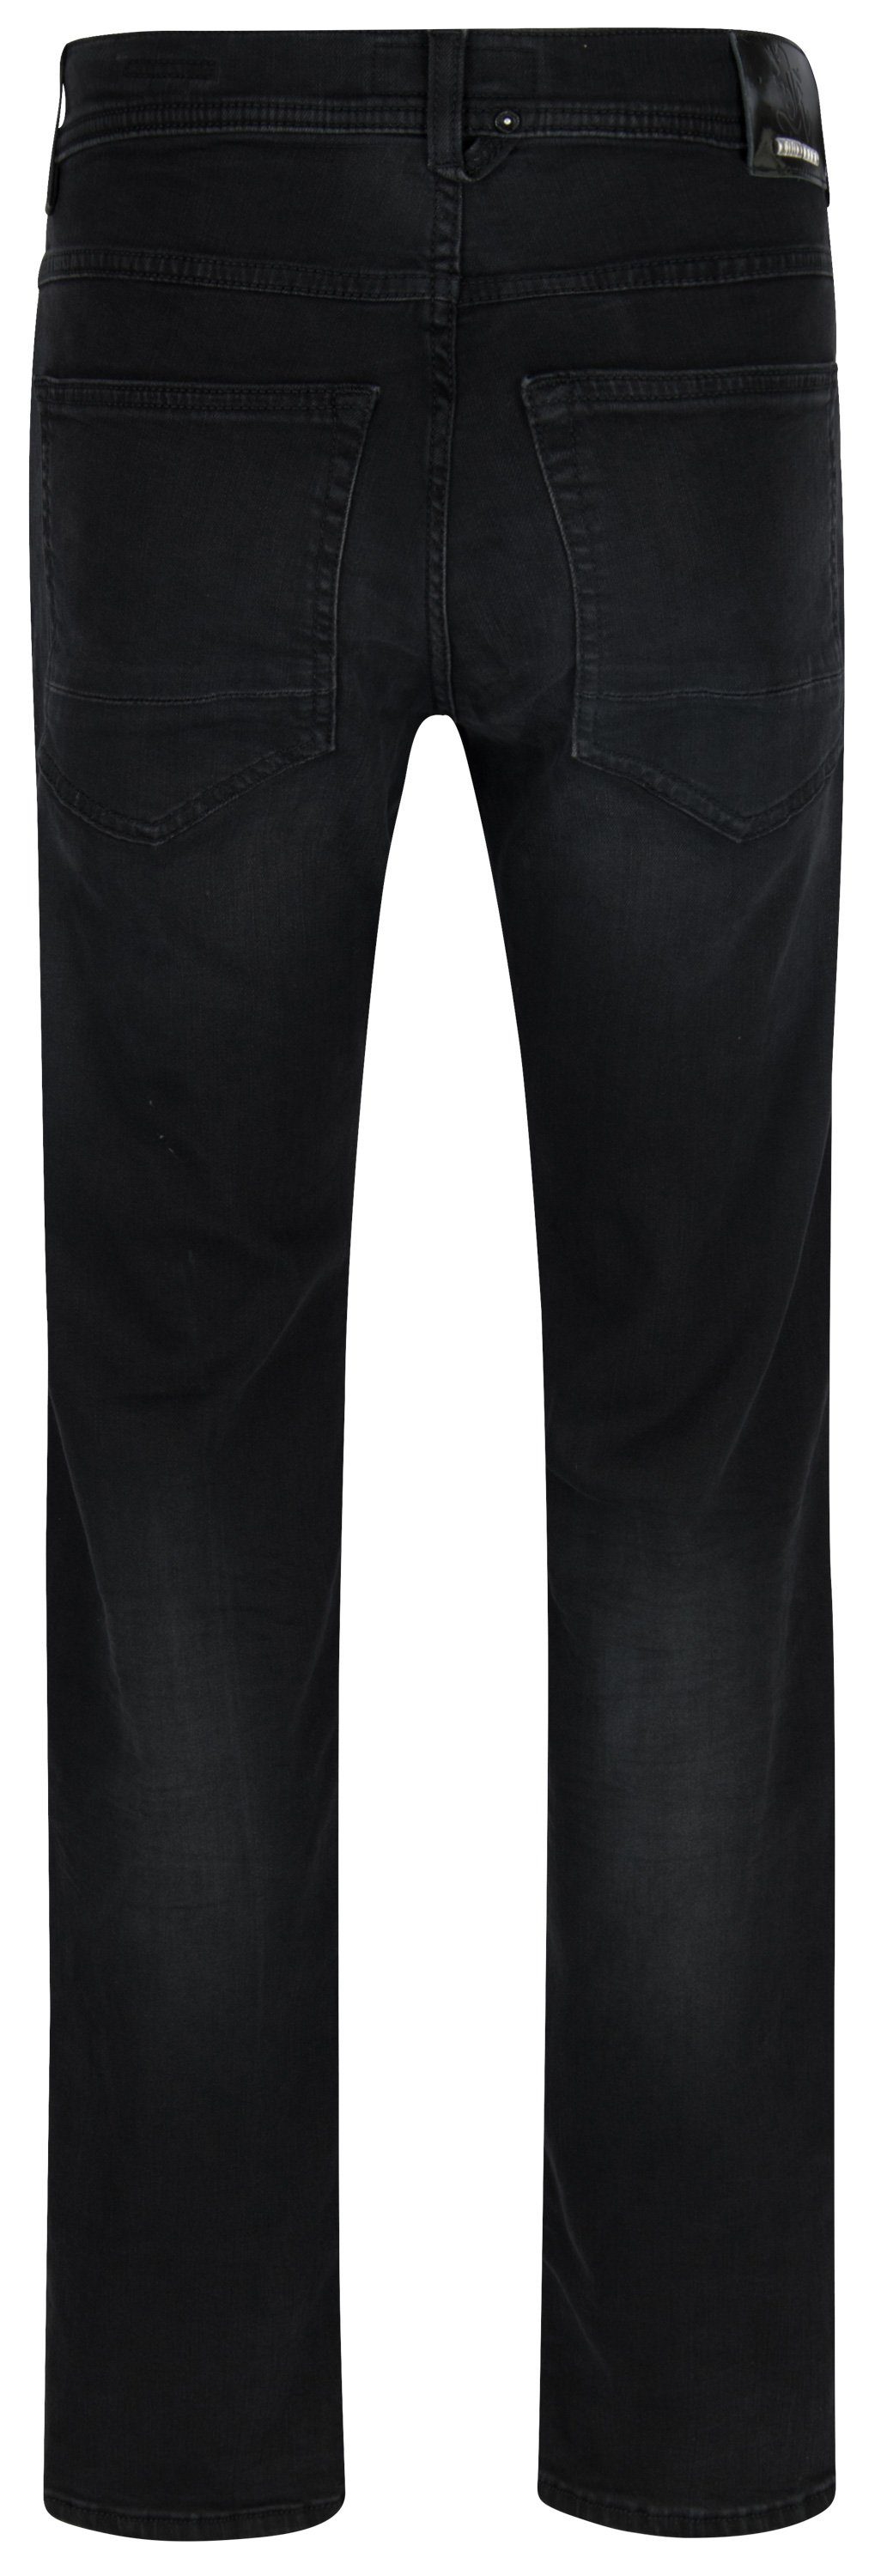 black 5-Pocket-Jeans 67151 6853.9814 Kern KERN OTTO buffies used JOHN dusty